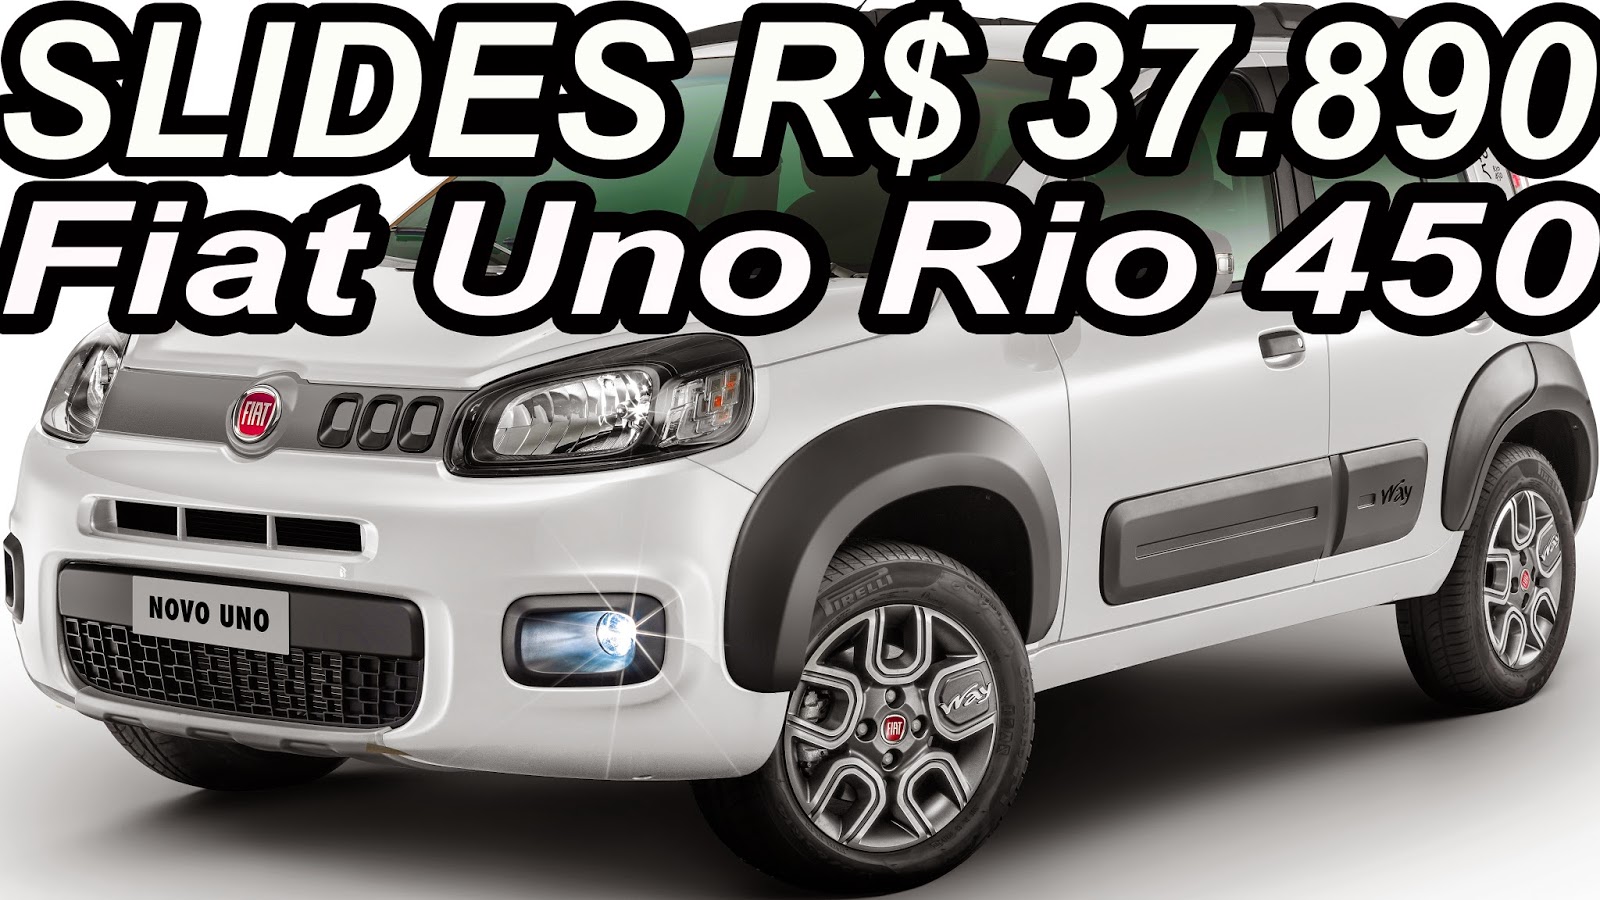 Fiat lança Novo Uno Série Especial Rio 450 por R$ 37.890